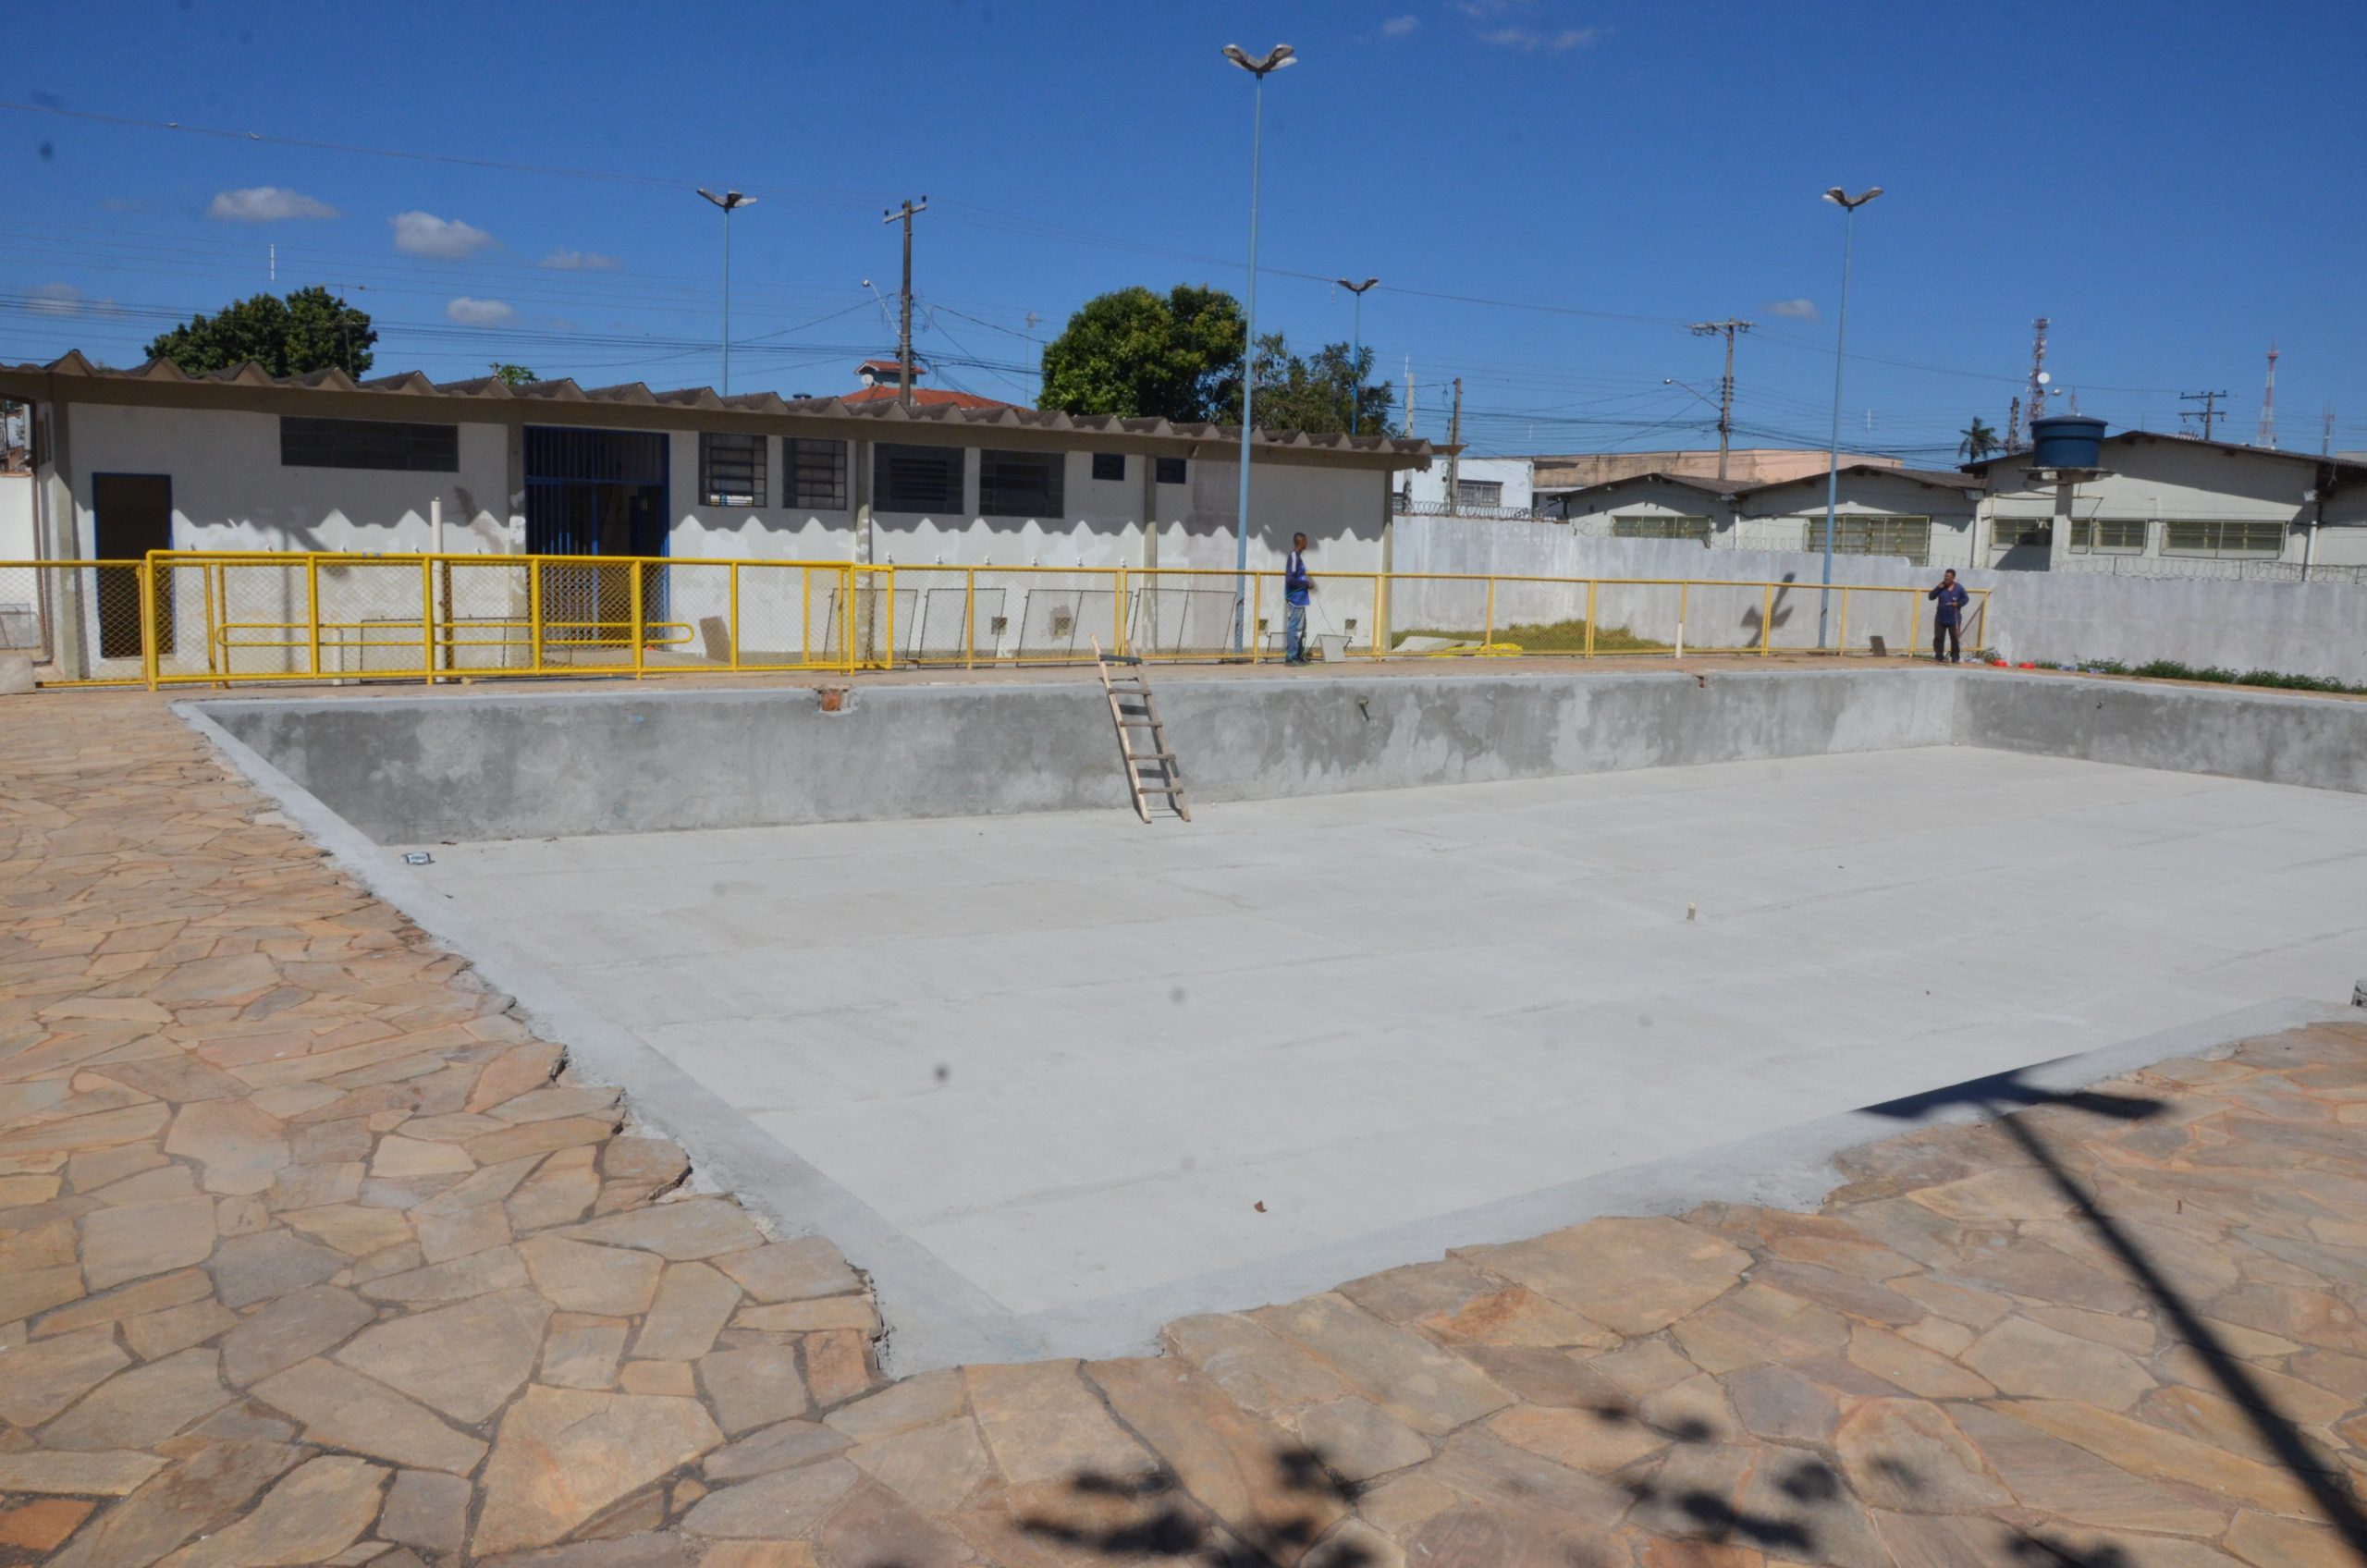 Jornal da Franca – Les travaux à la piscine de Vila Santa Terezinha donnent un nouveau look à l’enceinte sportive